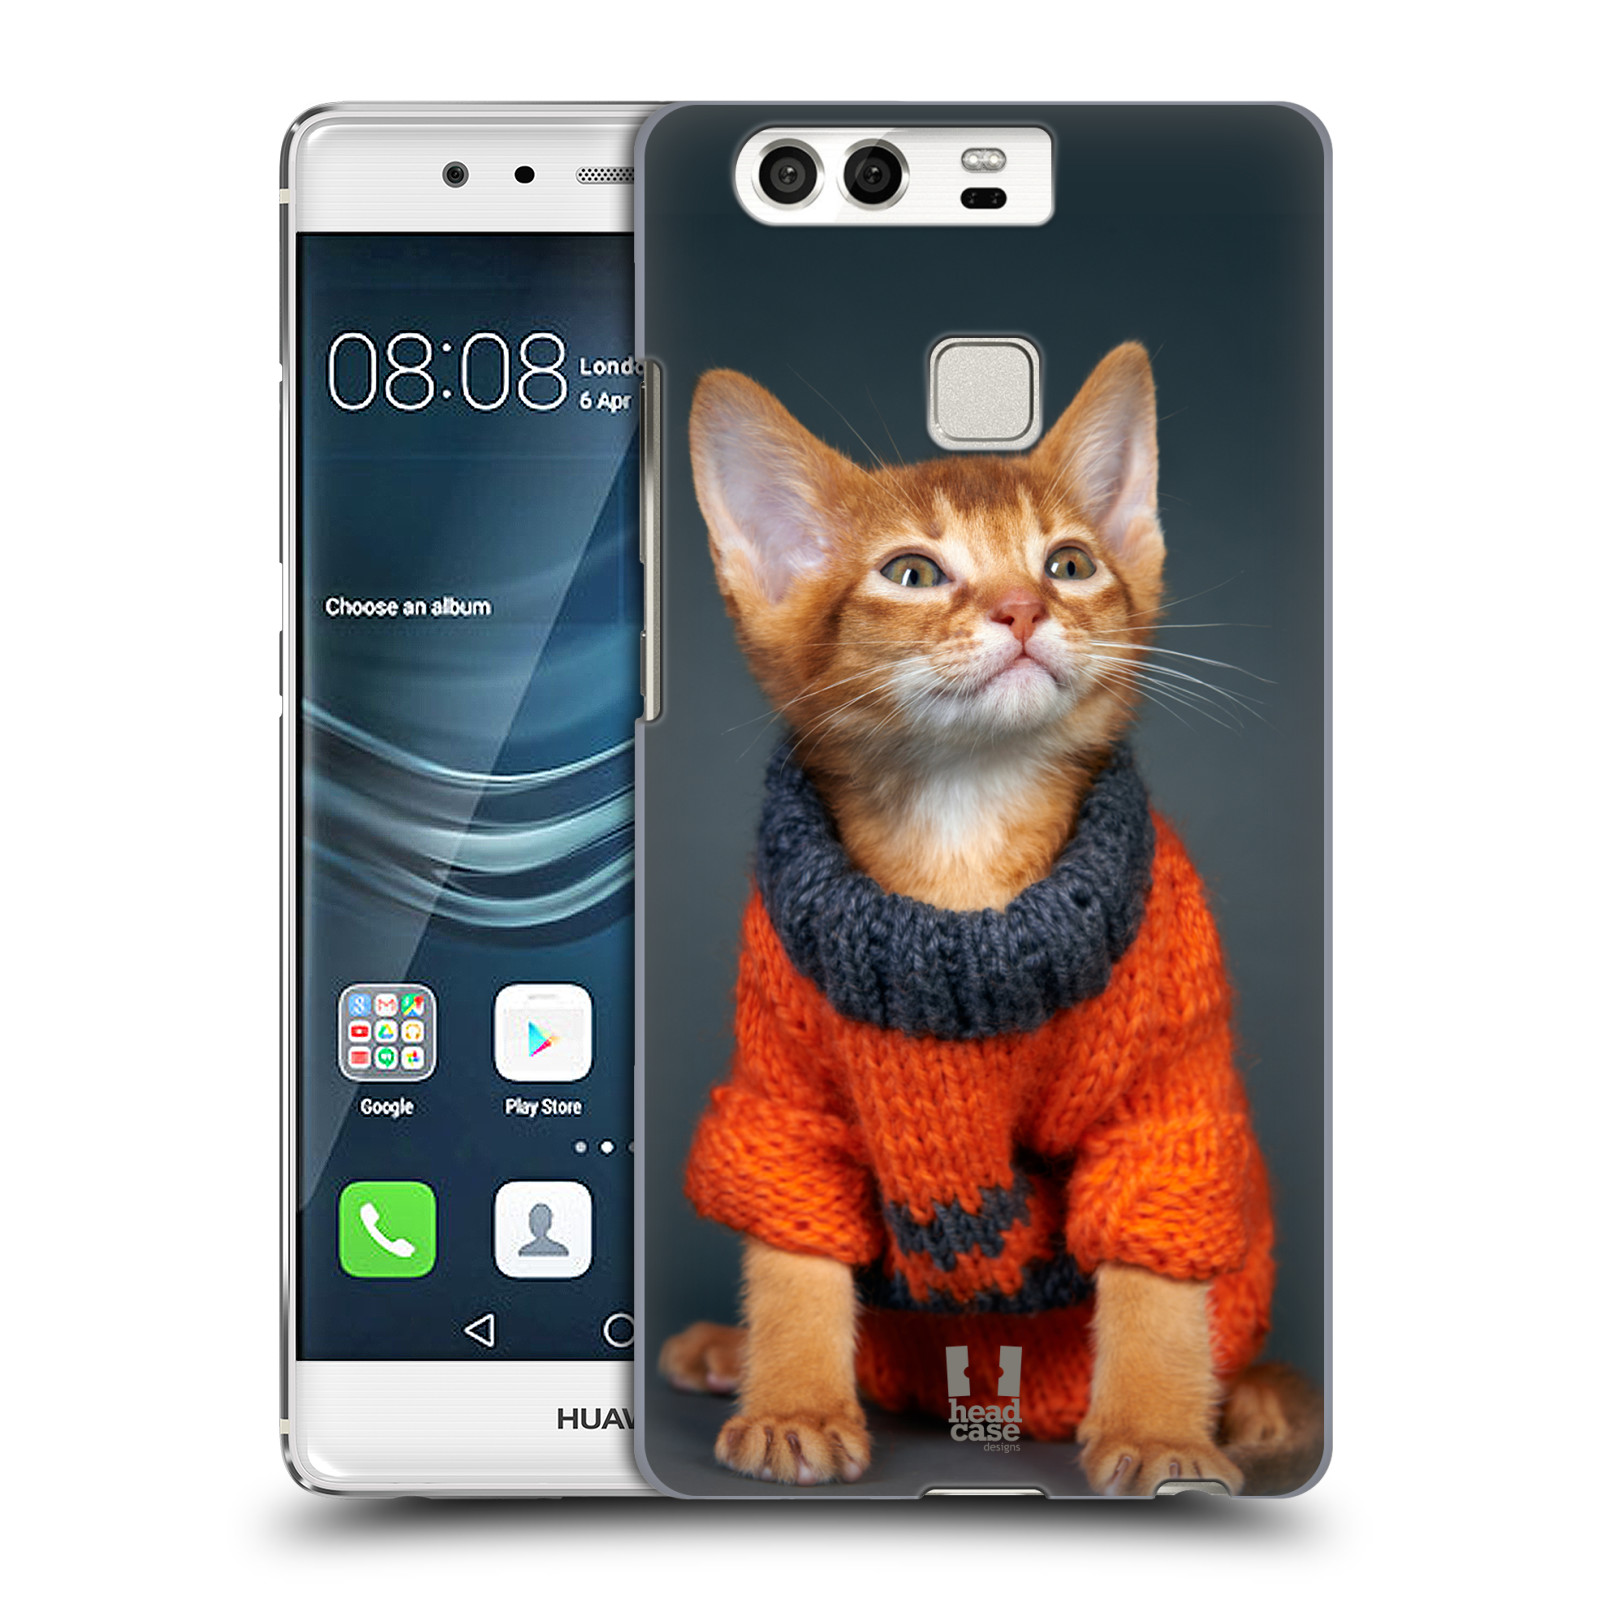 HEAD CASE plastový obal na mobil Huawei P9 / P9 DUAL SIM vzor Legrační zvířátka kočička v oranžovém svetru